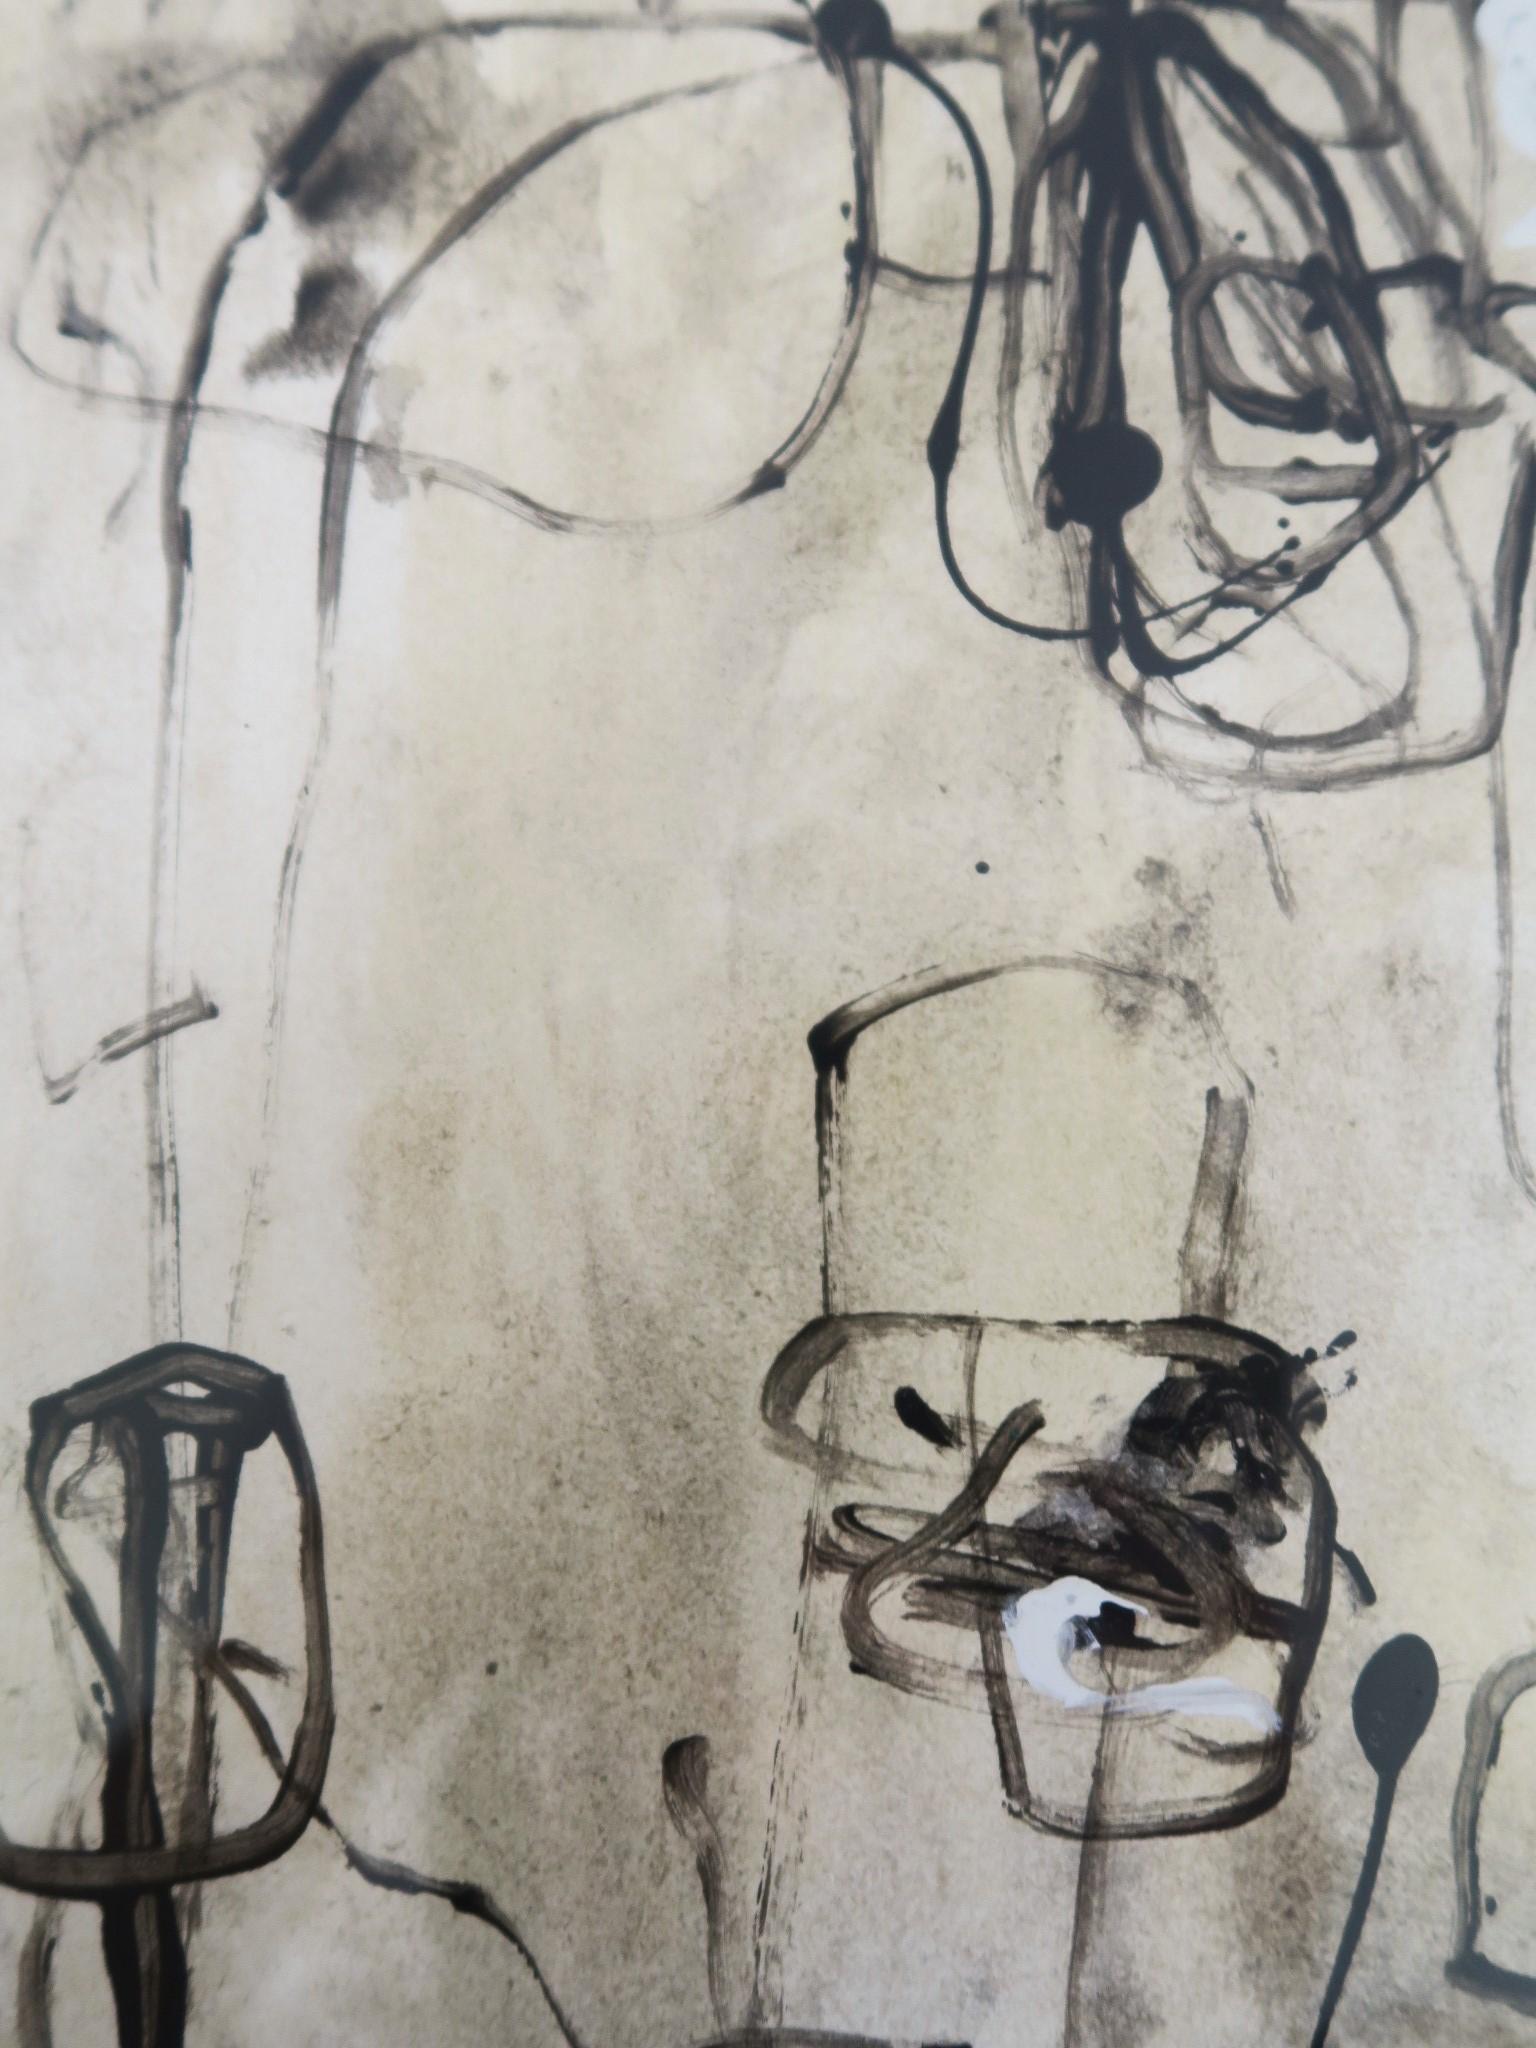 Acryliques et encres sur papier « Labyrinthe » dans des teintes de caoutchouc brut, noir et blanc - Painting de Karina Gentinetta